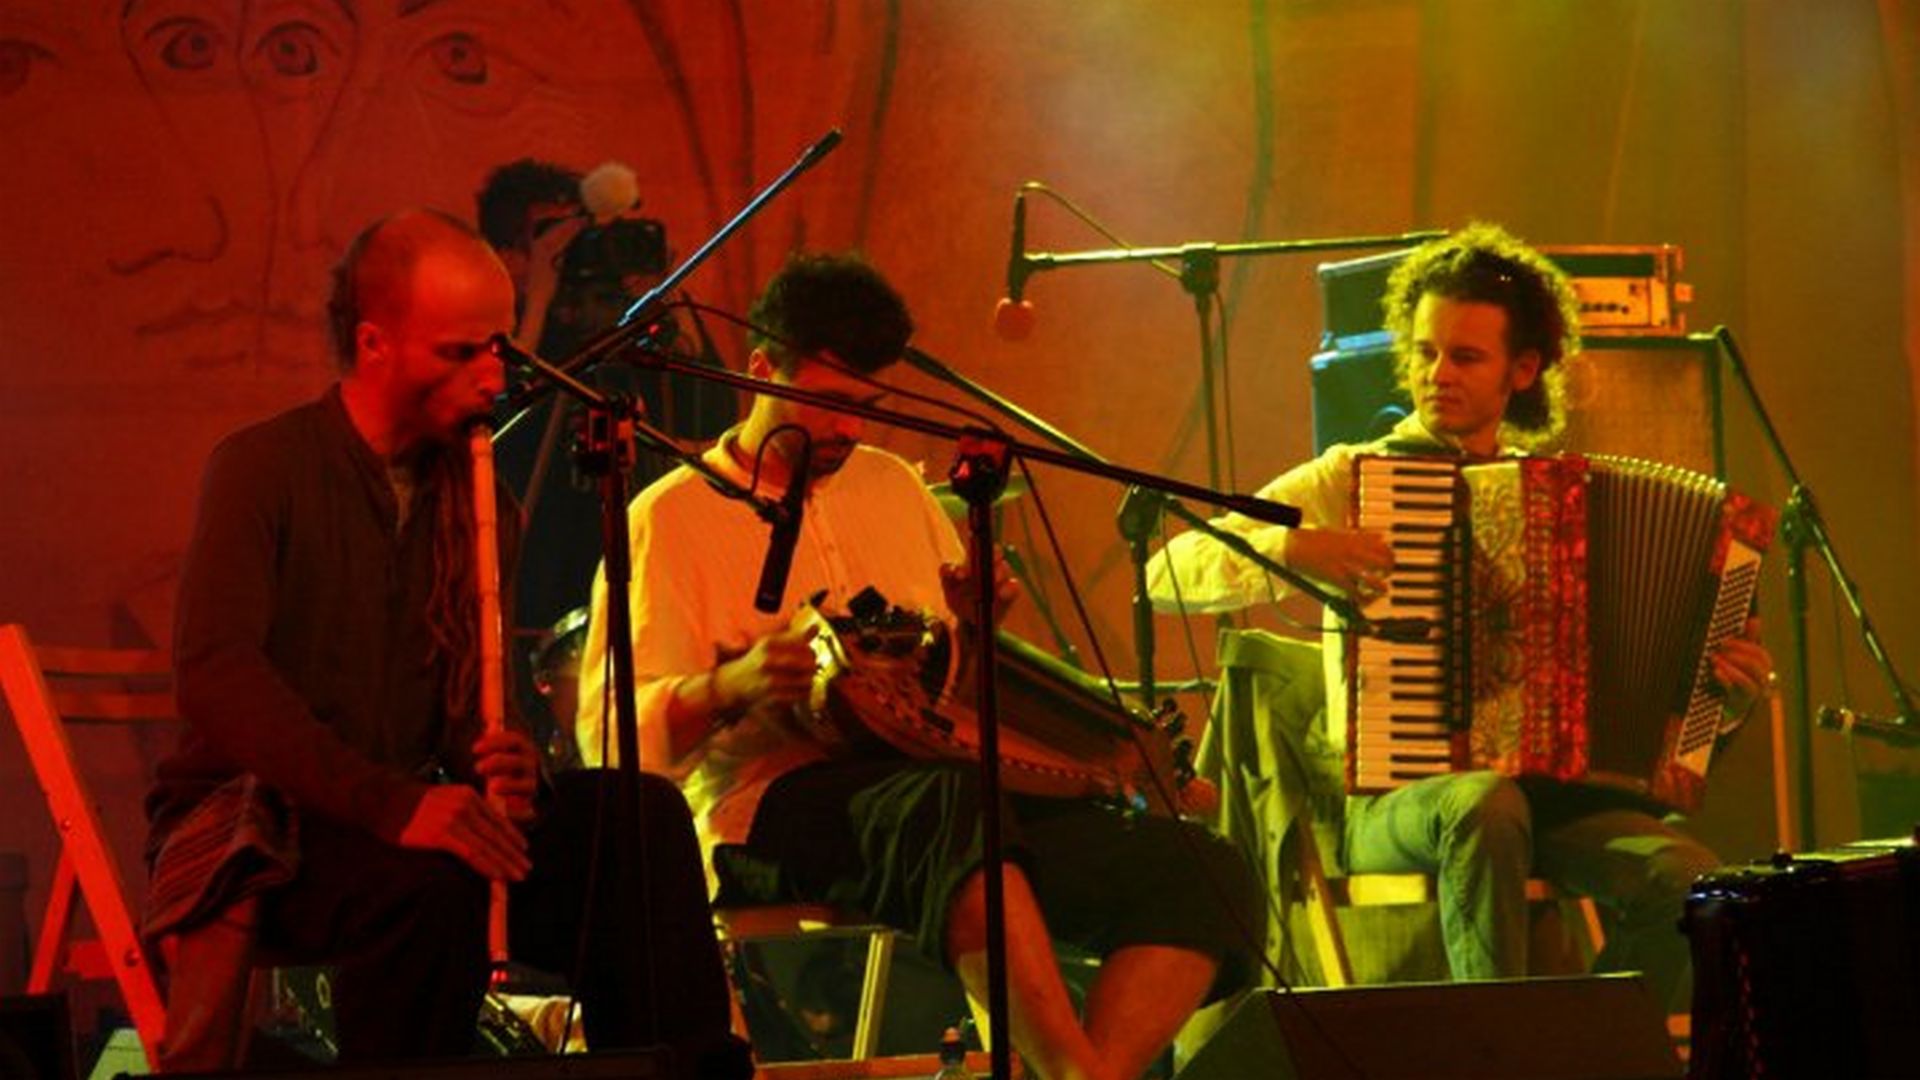 [Trzej mężczyźni grają na tradycyjnych instrumentach. Siedzą na scenie koncertowej. Przed nimi mkrofony na statywach.]